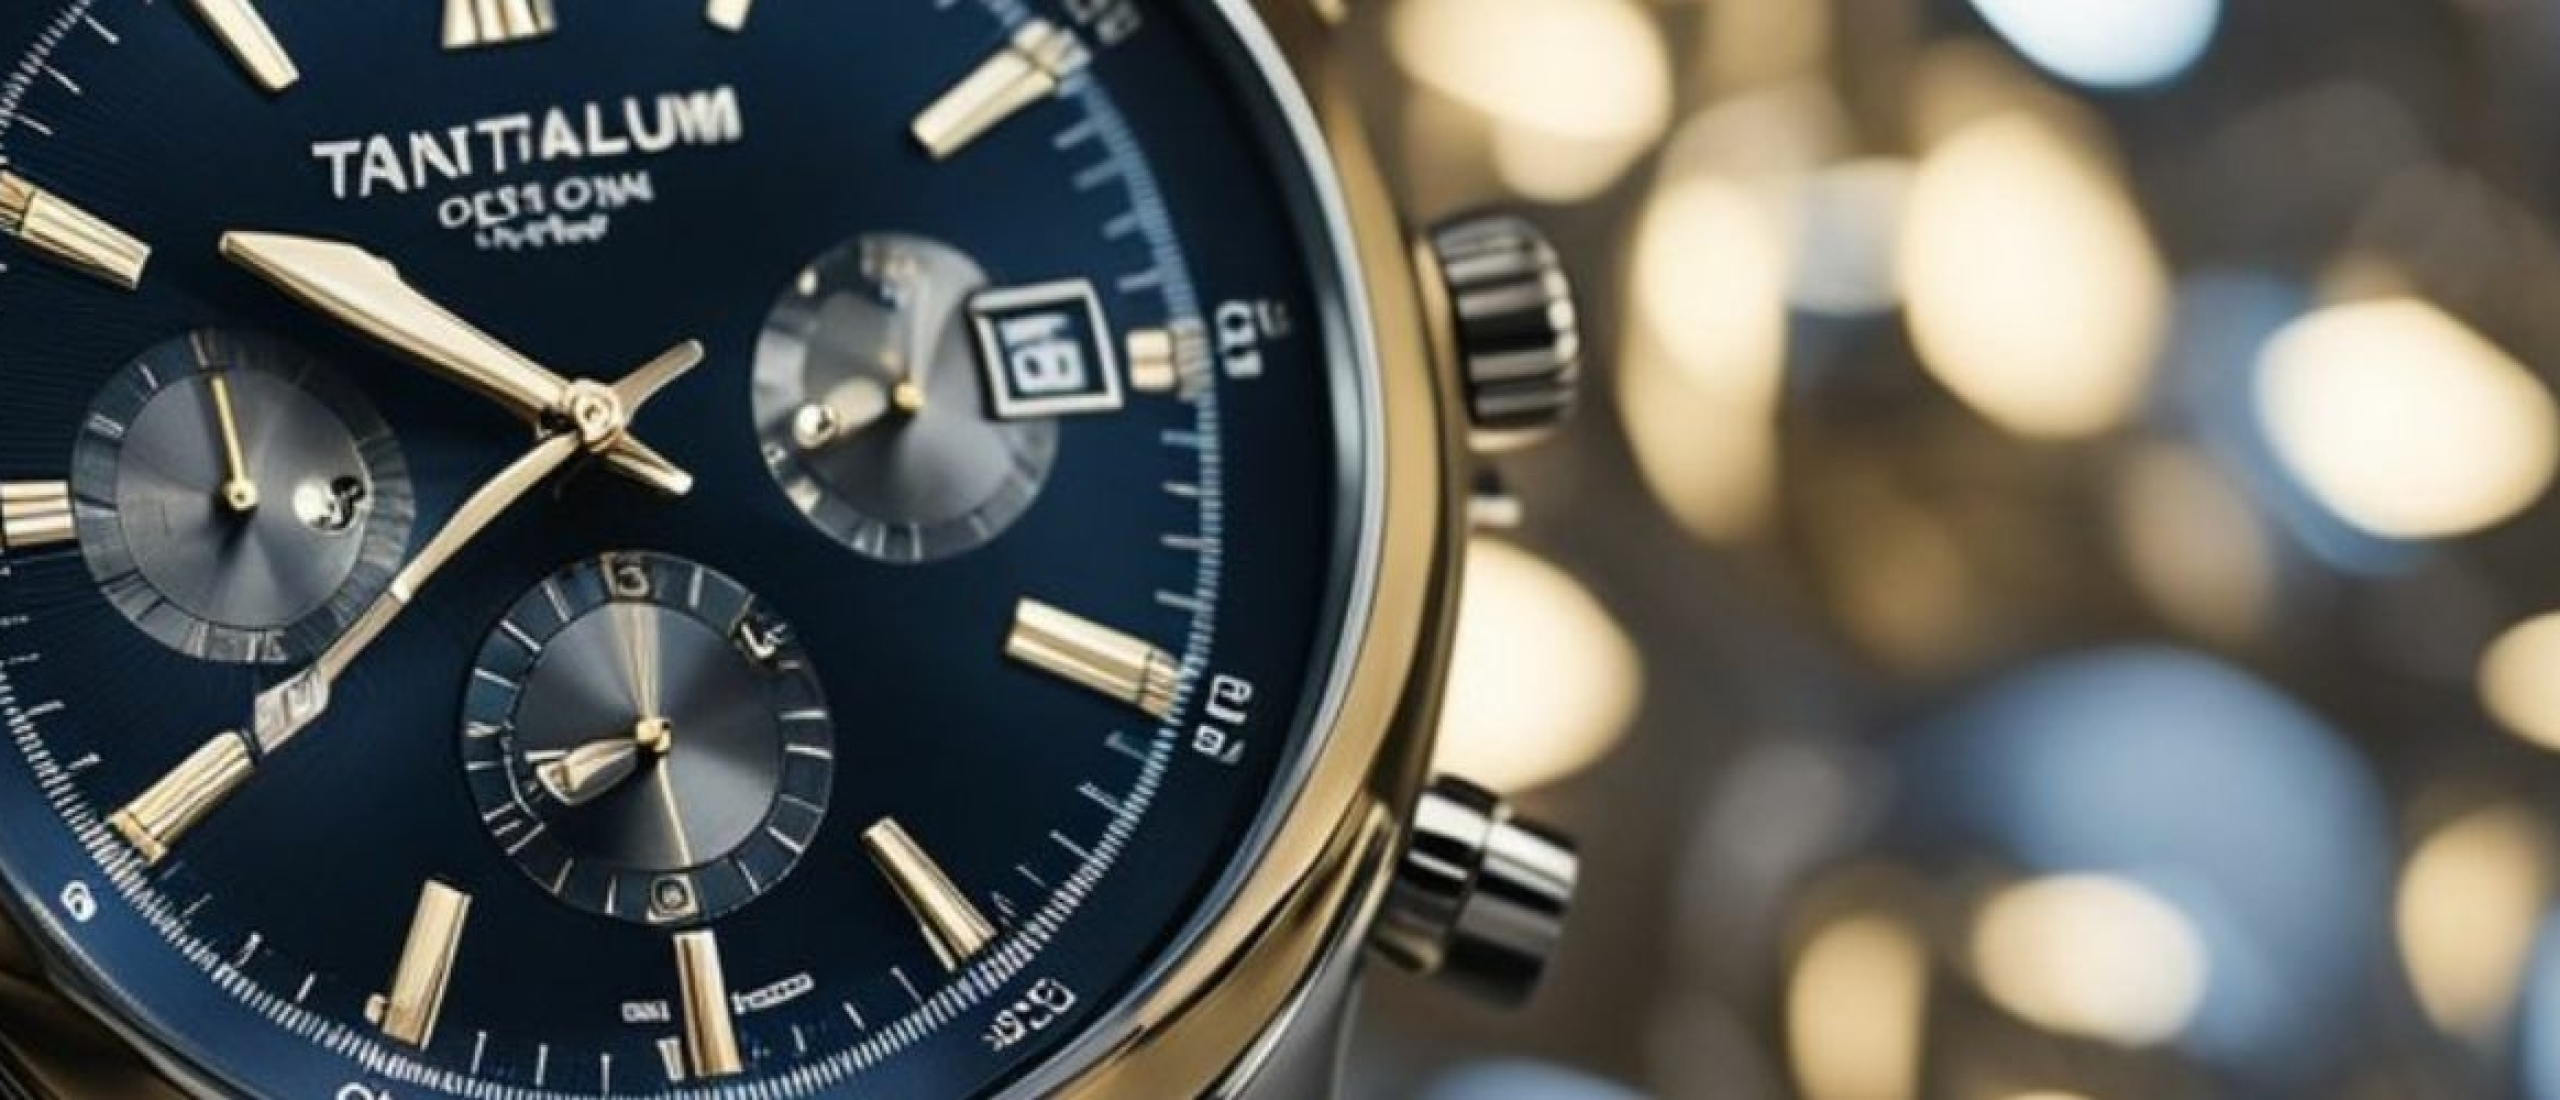 Tantalium: Een uniek metaal voor horloges